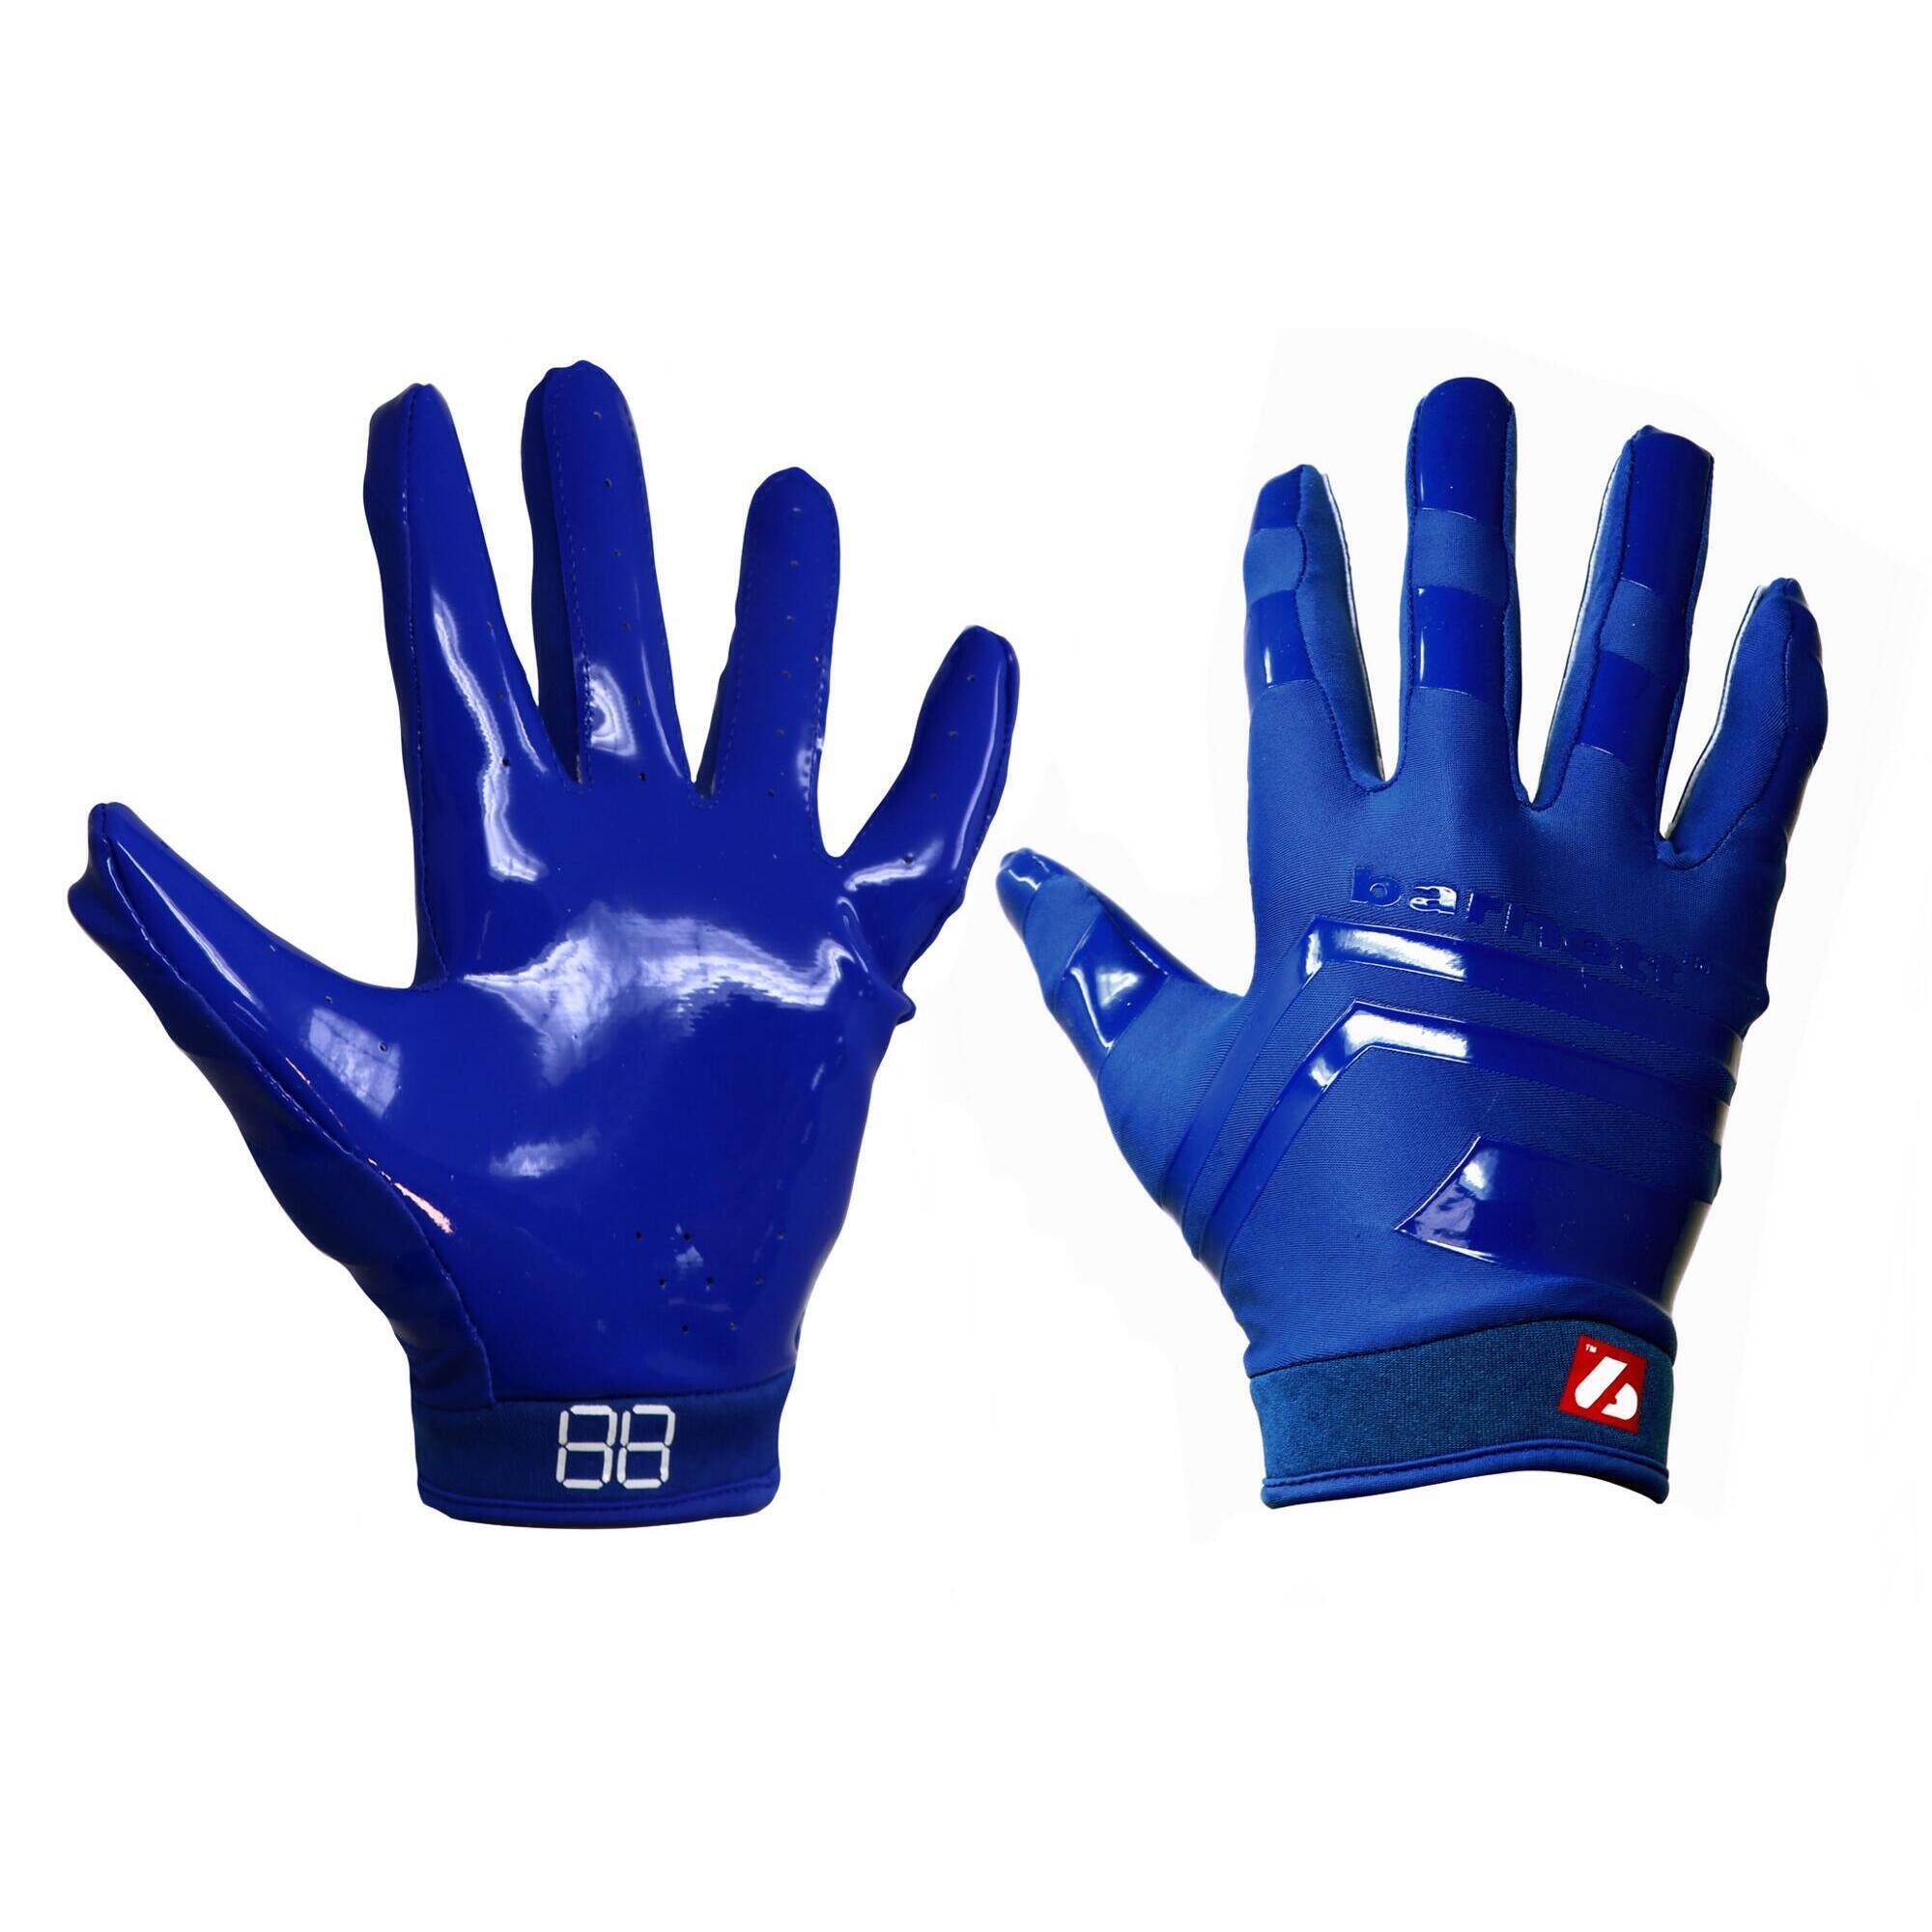 BARNETT  pro receiver american football gloves, RE,DB,RB, Blue FRG-03